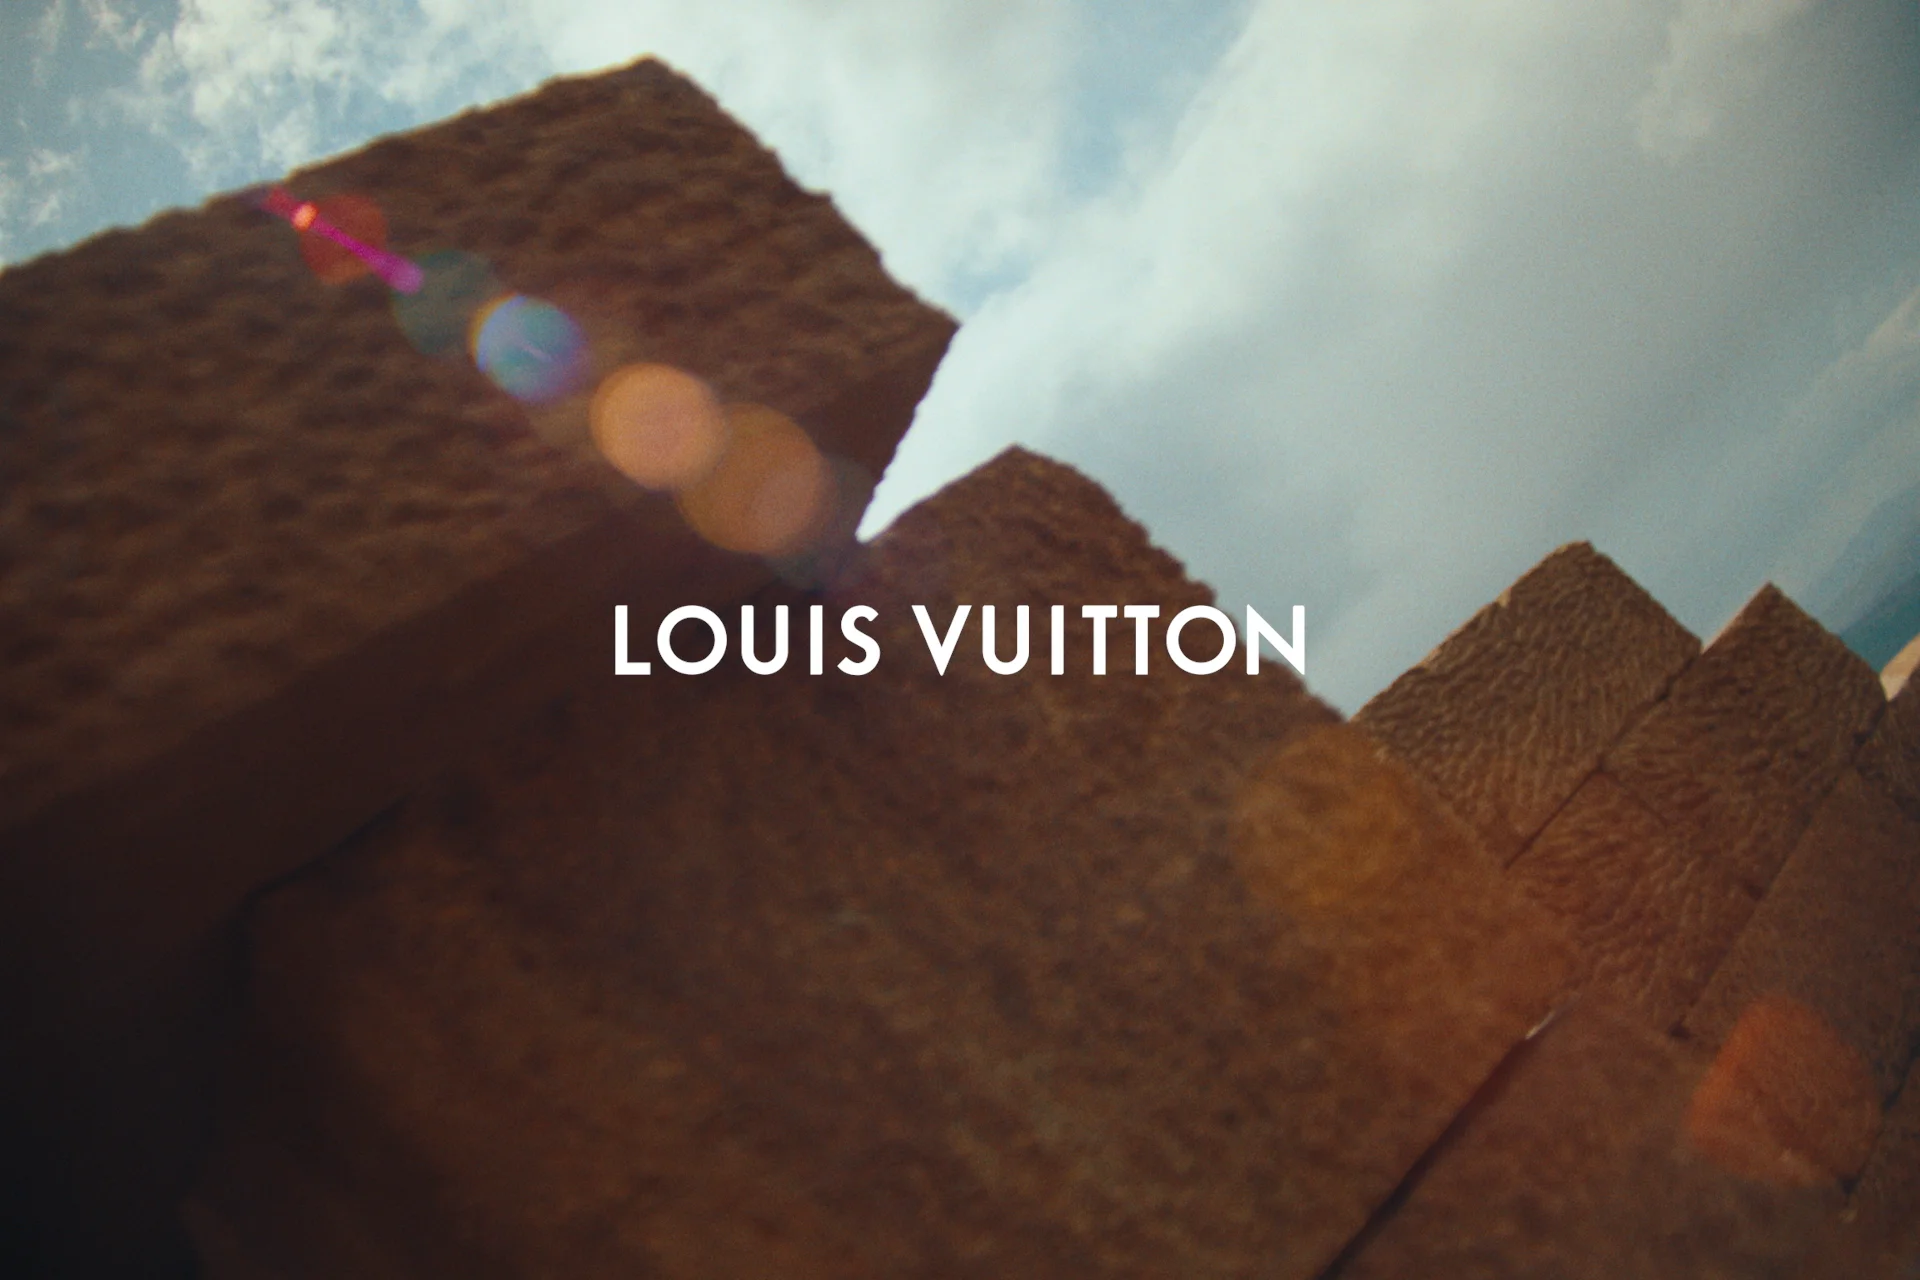 Louis Vuitton S/S 23 Menswear Campaign (Louis Vuitton)